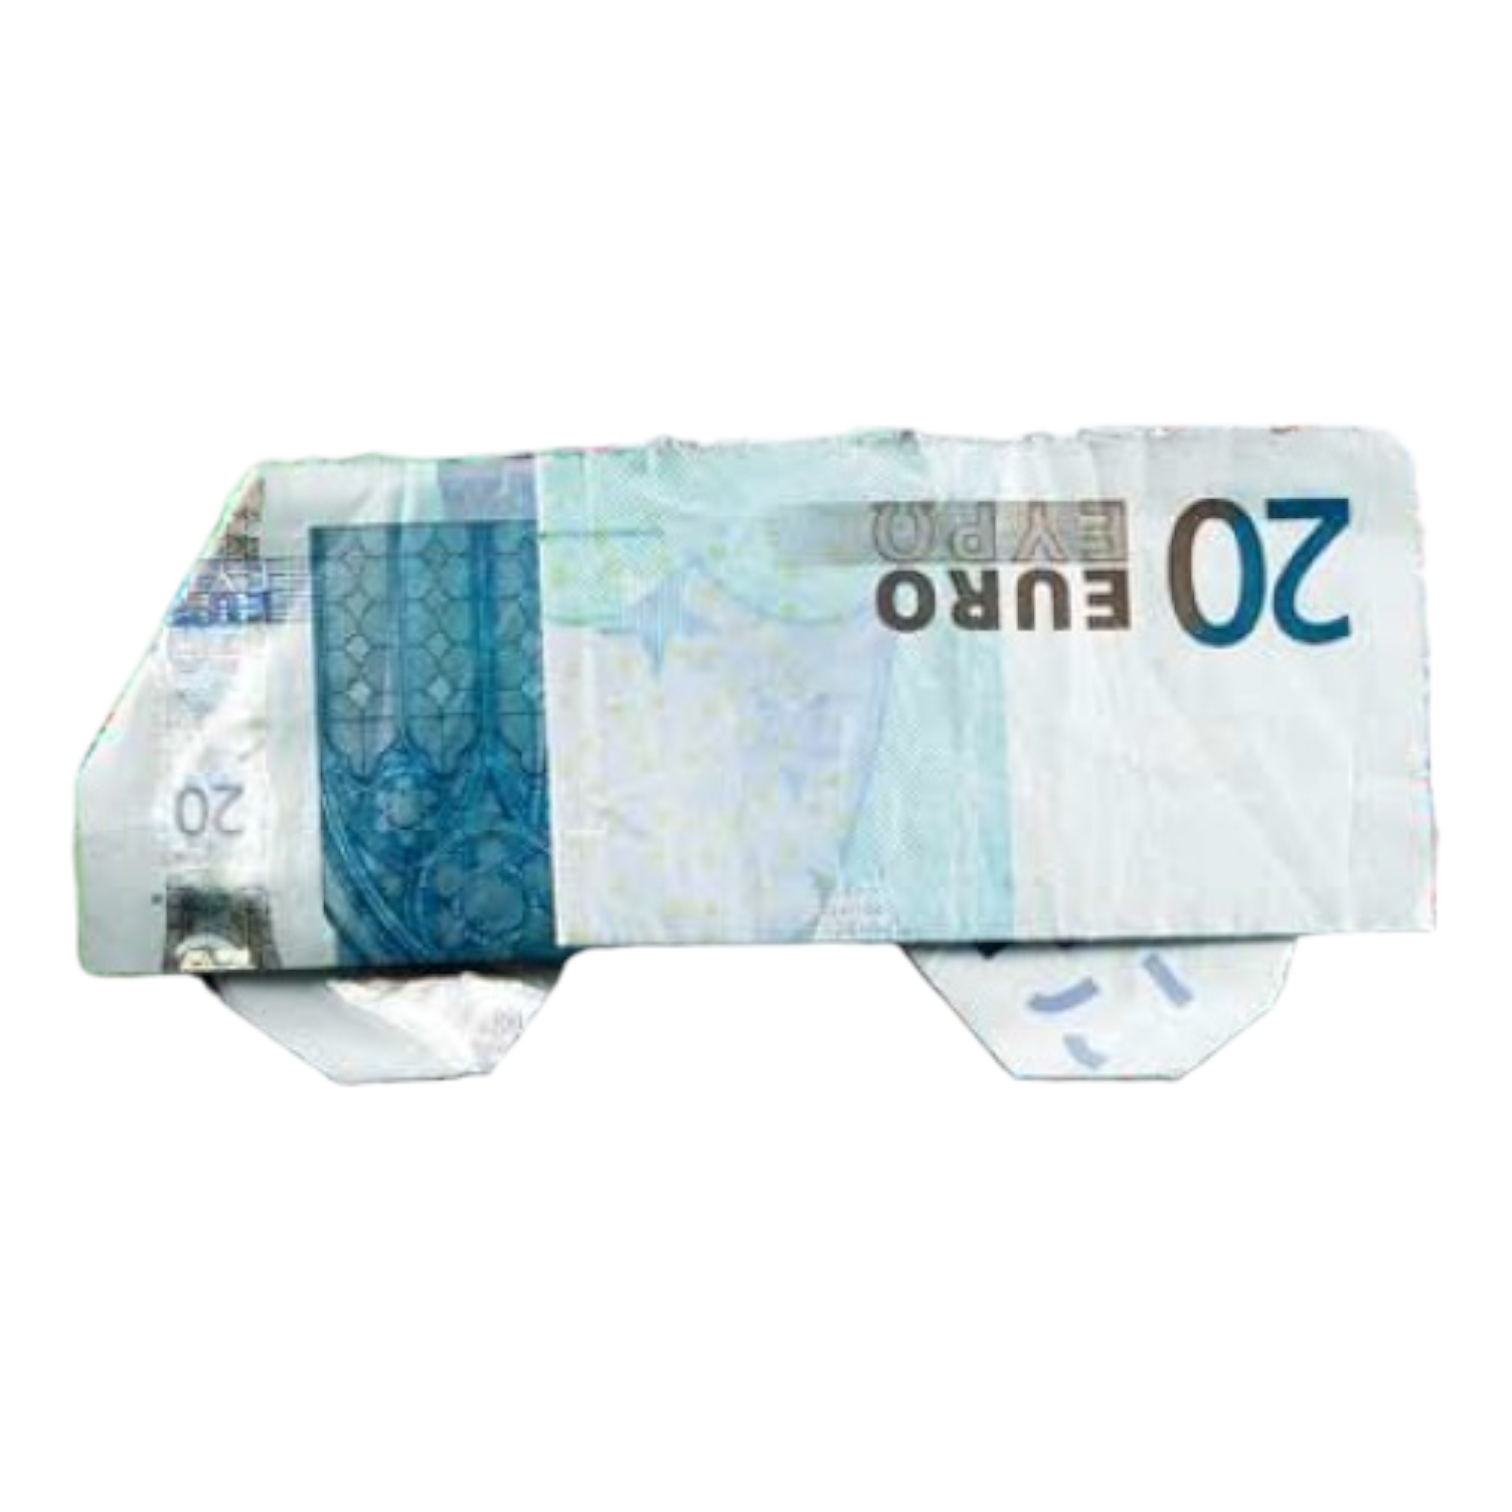 Origami Geldschein Bus